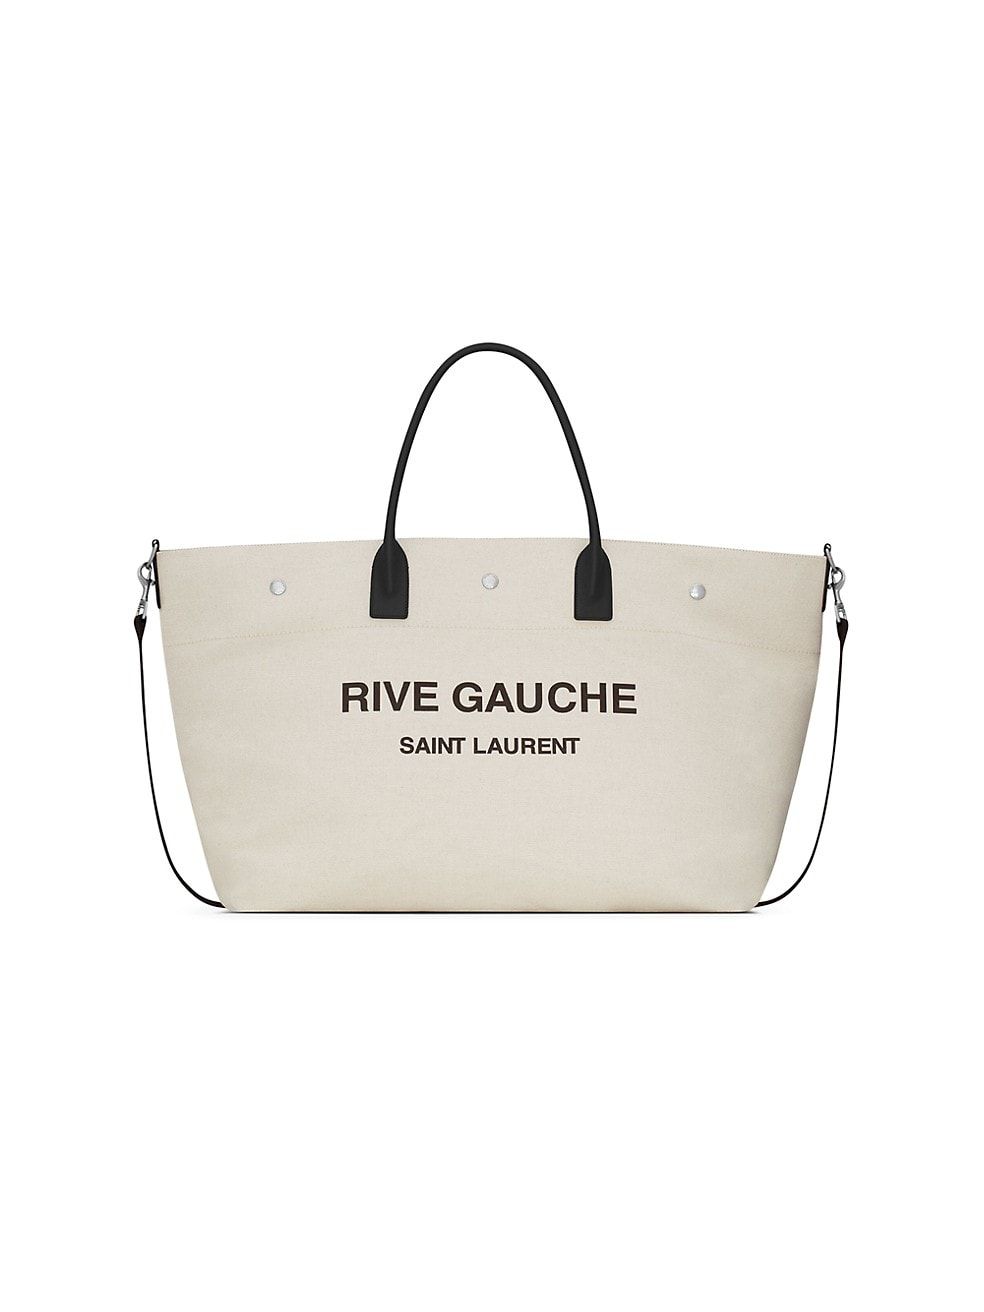 Saint Laurent Rive Gauche Canvas Tote Bag | Saks Fifth Avenue